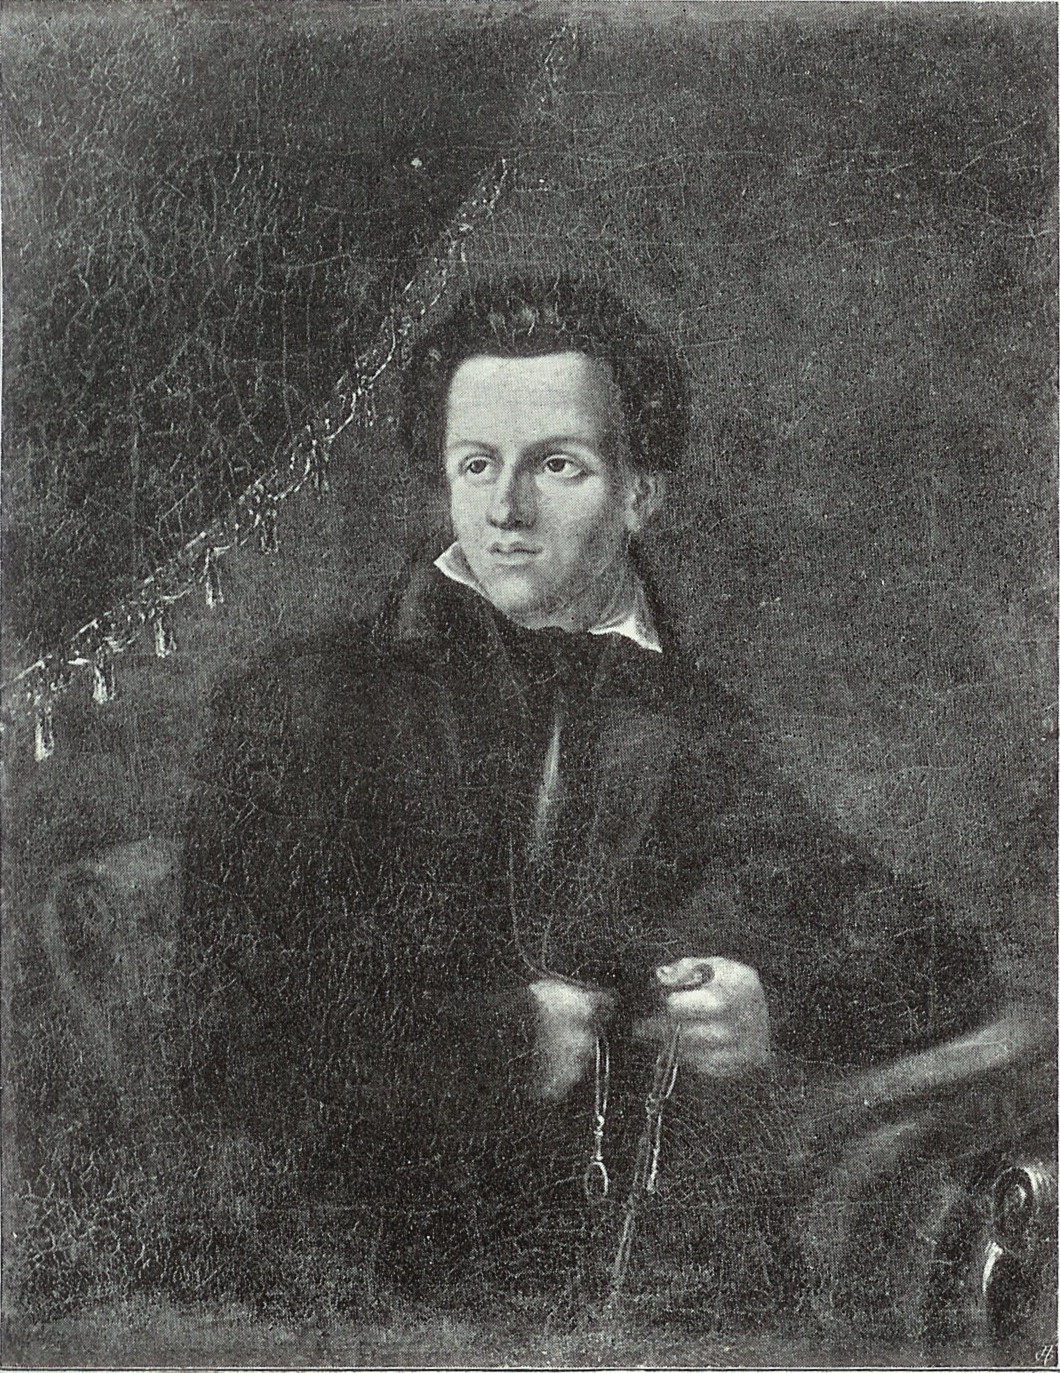 Portret Juliusza Słowackiego namalowany przez T. Byczkowskiego w Dreźnie w r. 1831 (Wikipedia)